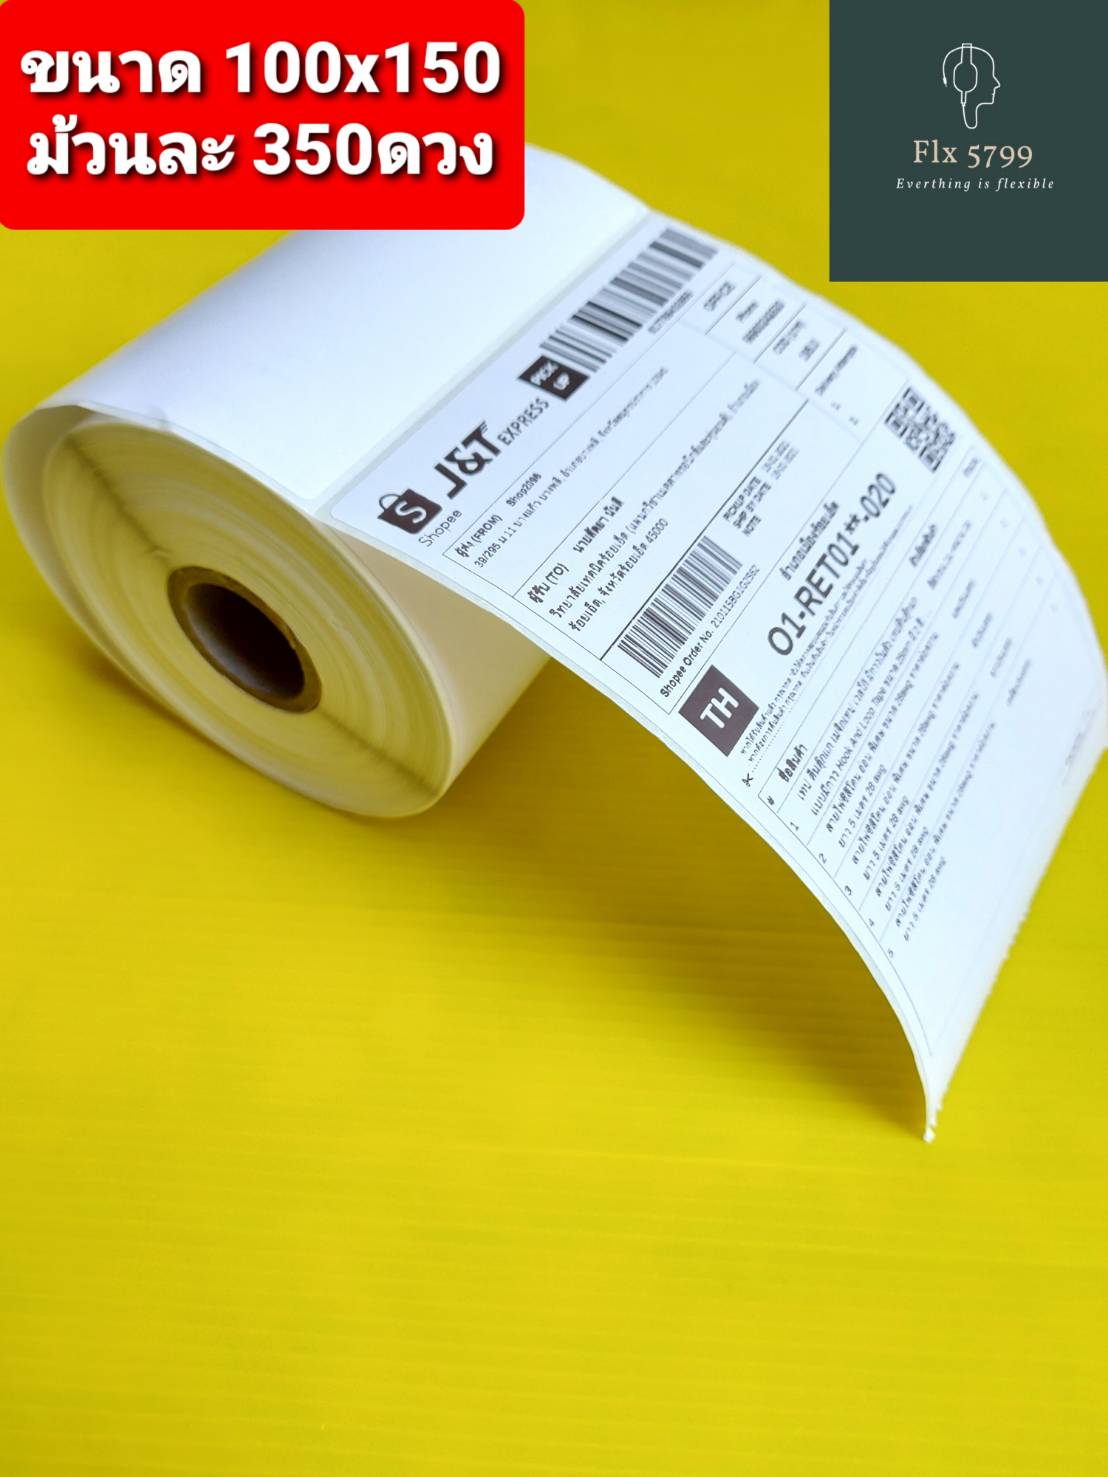 กระดาษ 100x150mmไม่ต้องใชหมึก มีกาวในตัว Barcode Sticker Thermal Label จำนวน พับละ 500 แผ่น /ม้วนละ350 แผ่น